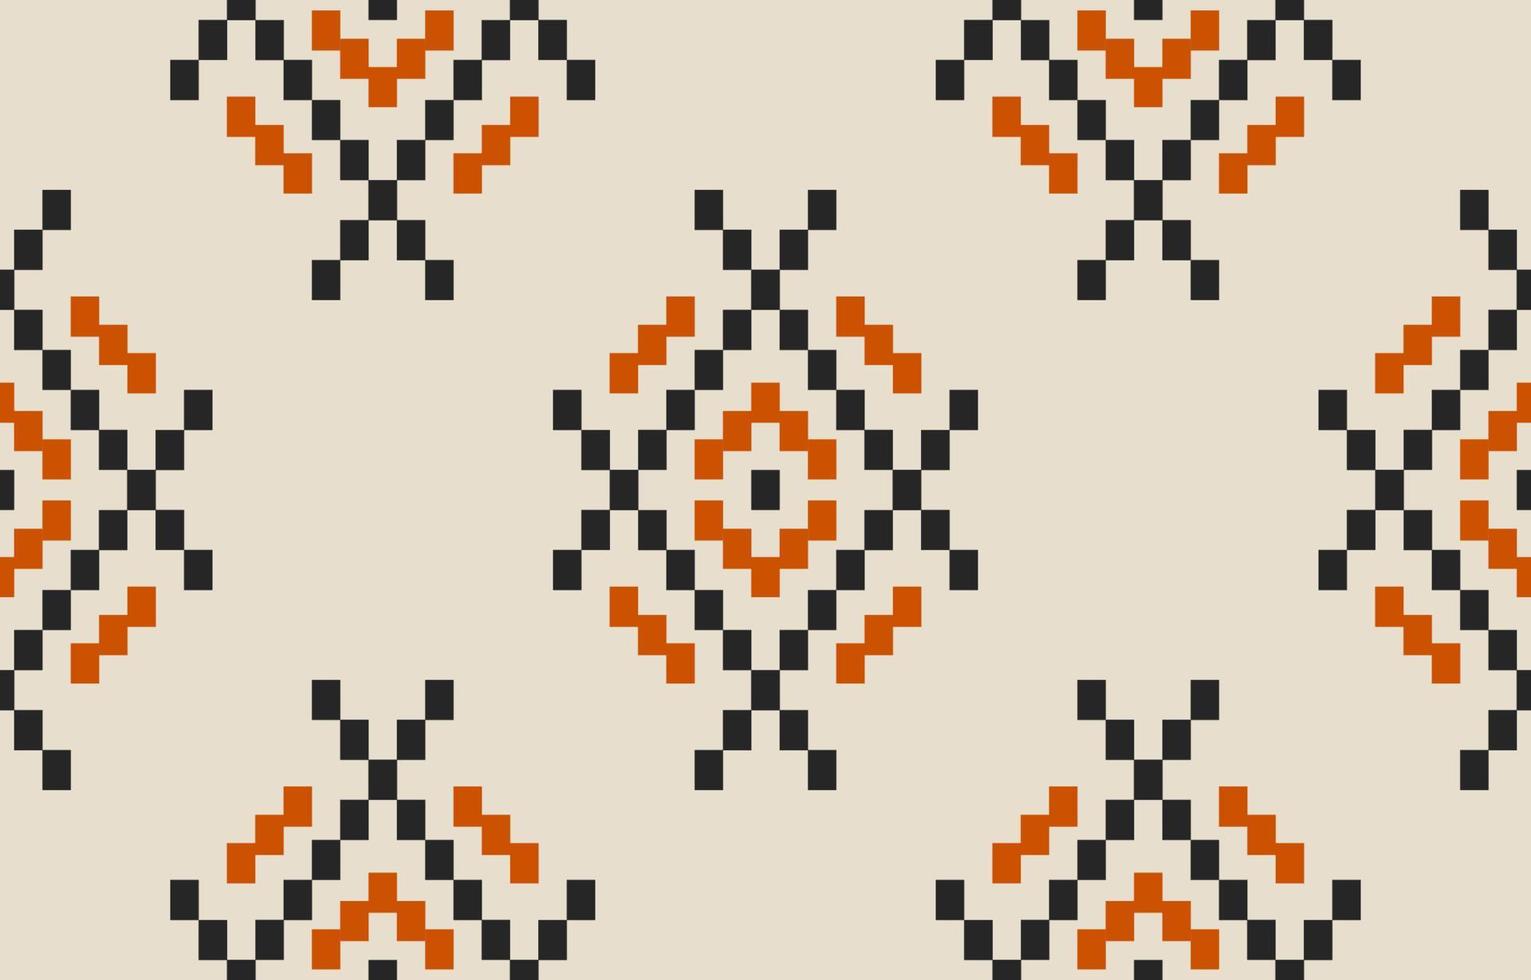 kleding stof etnisch aztec stijl. etnisch meetkundig naadloos patroon in stam. vector